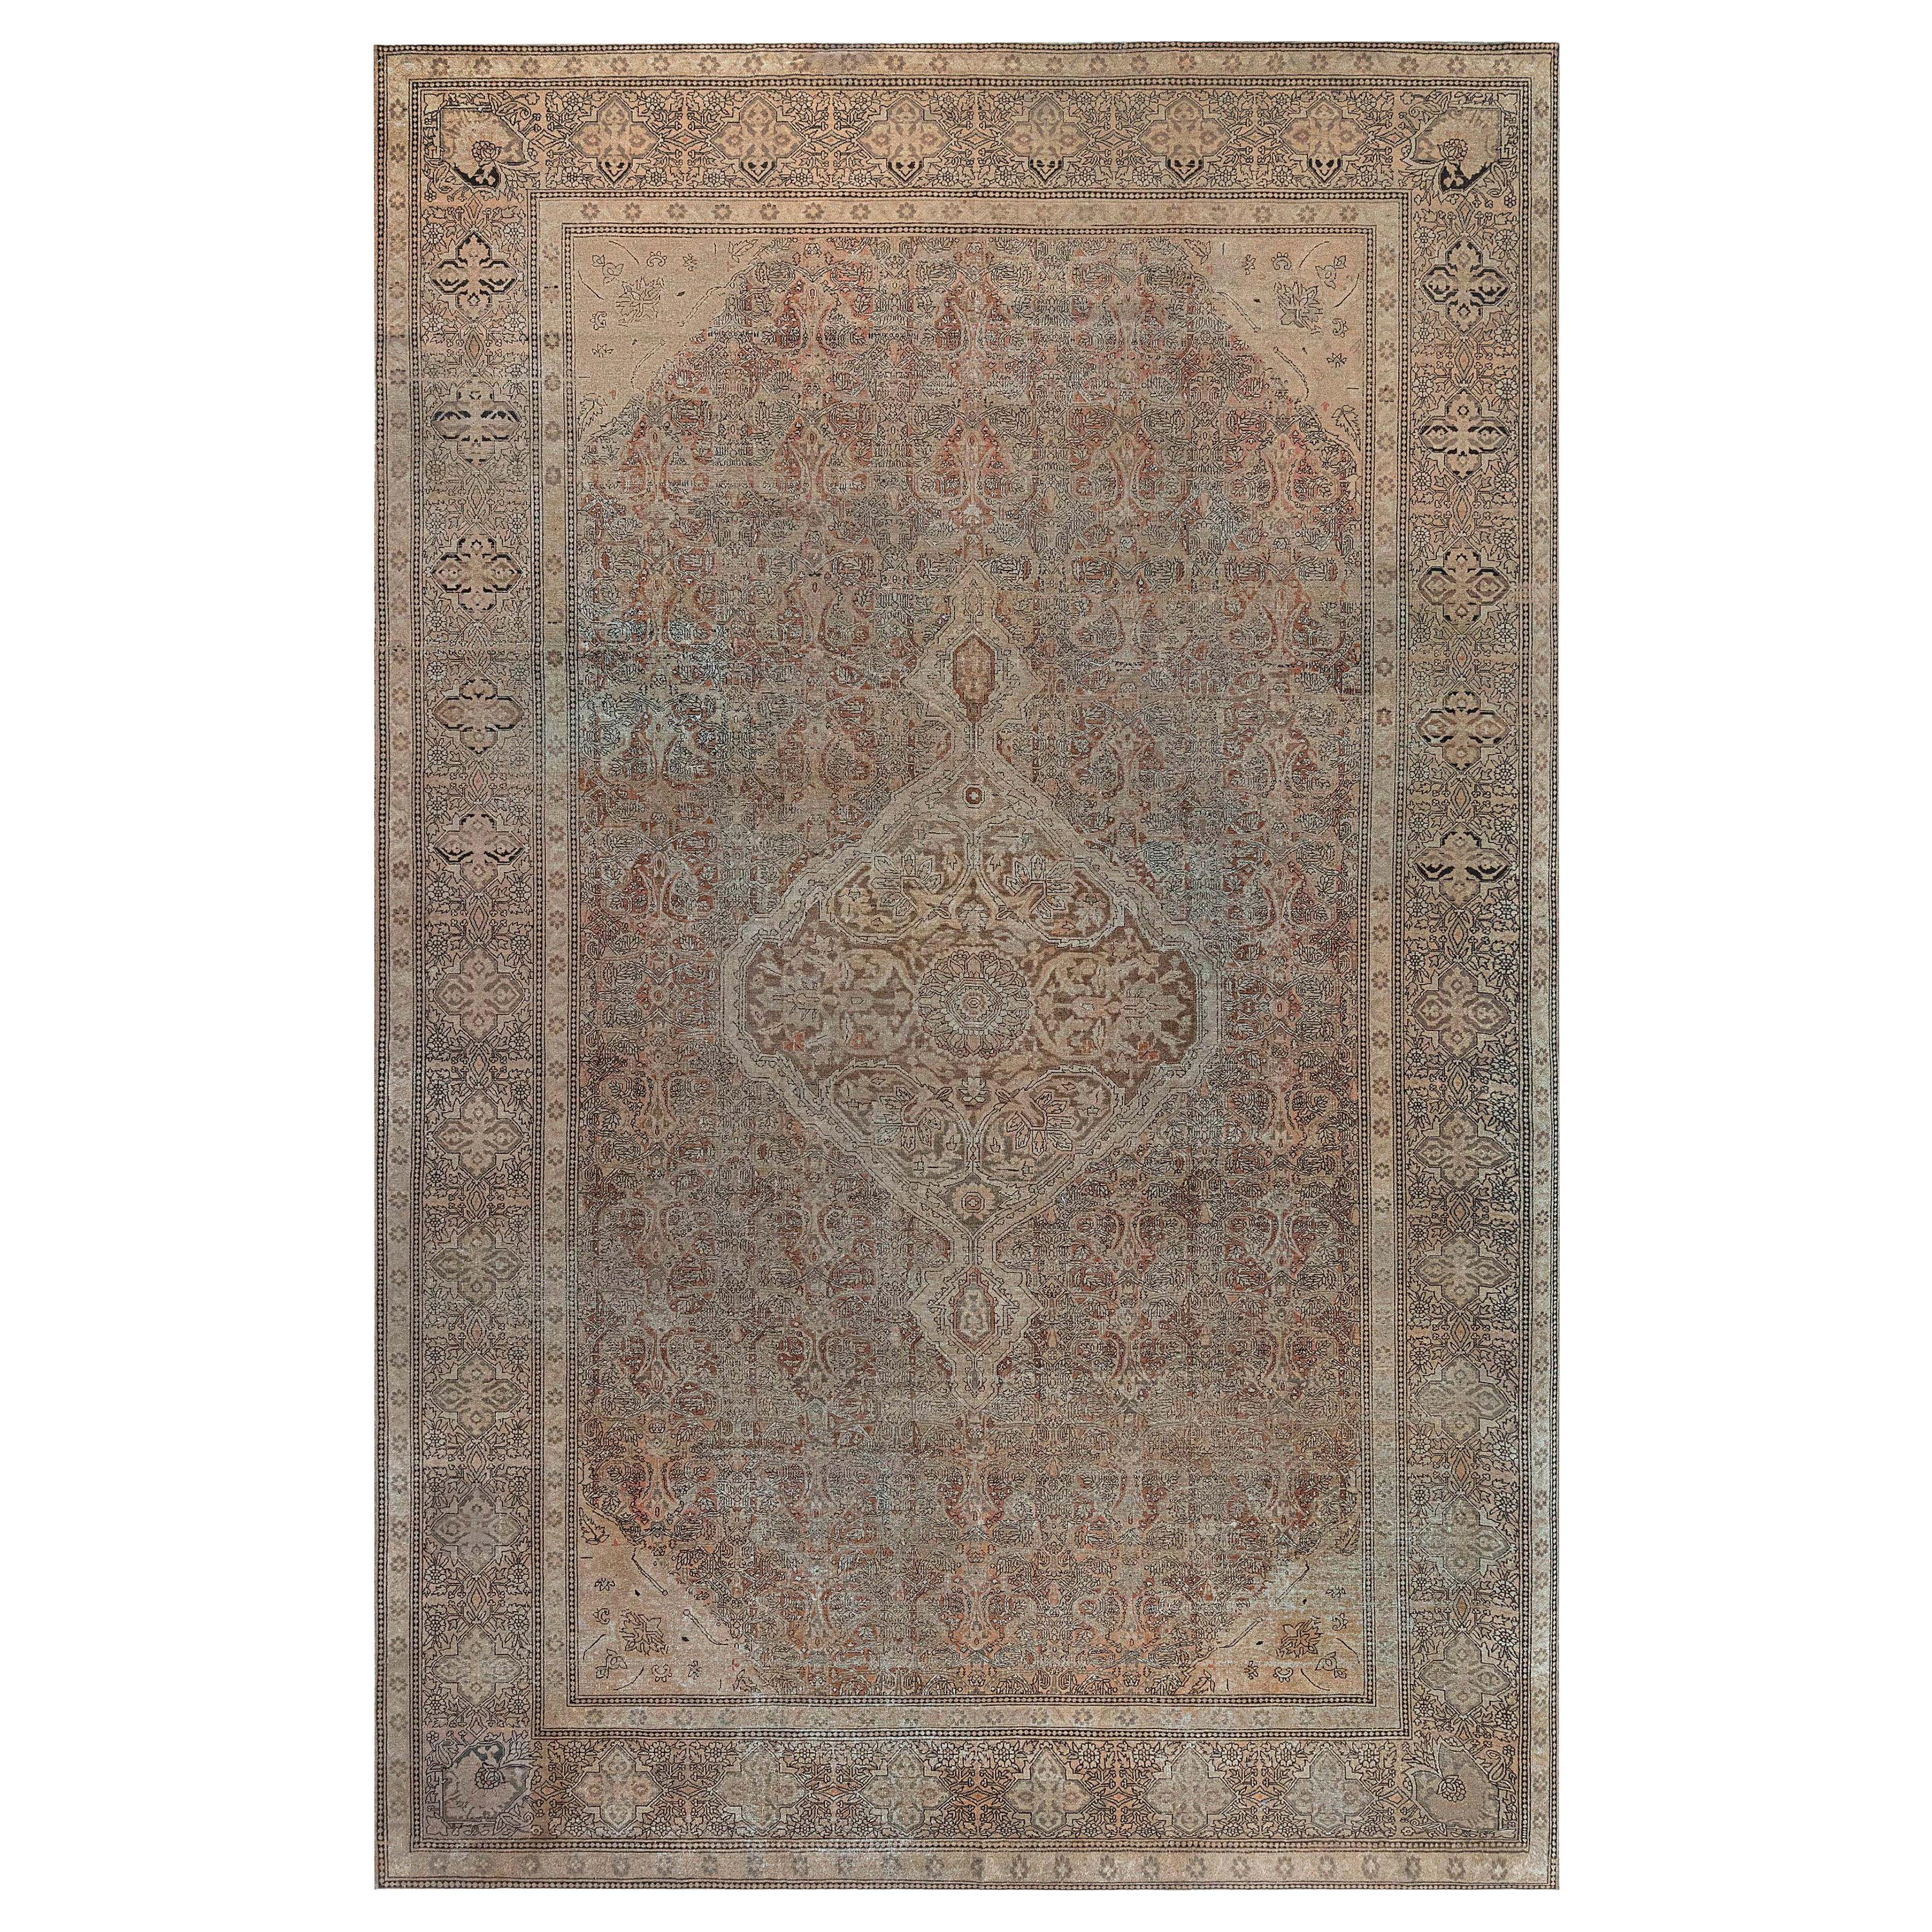 Authentique tapis indien Amritsar du 19ème siècle fait à la main